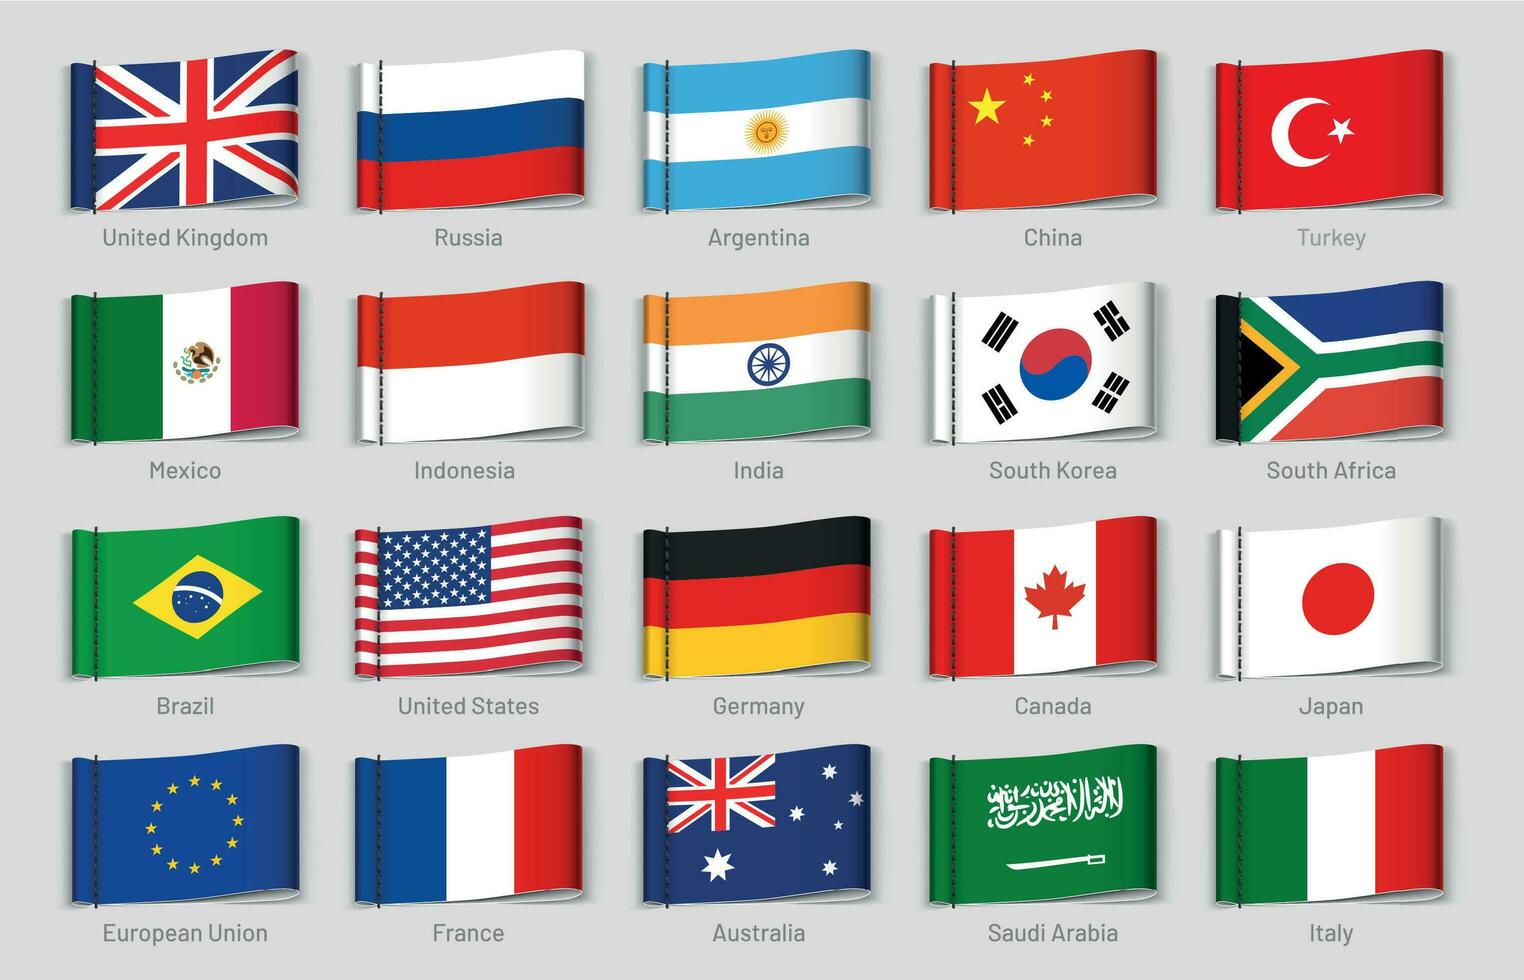 nationale drapeaux en tissu Mots clés. g20 des pays Étiquettes, officiel pays drapeau étiquette vecteur ensemble